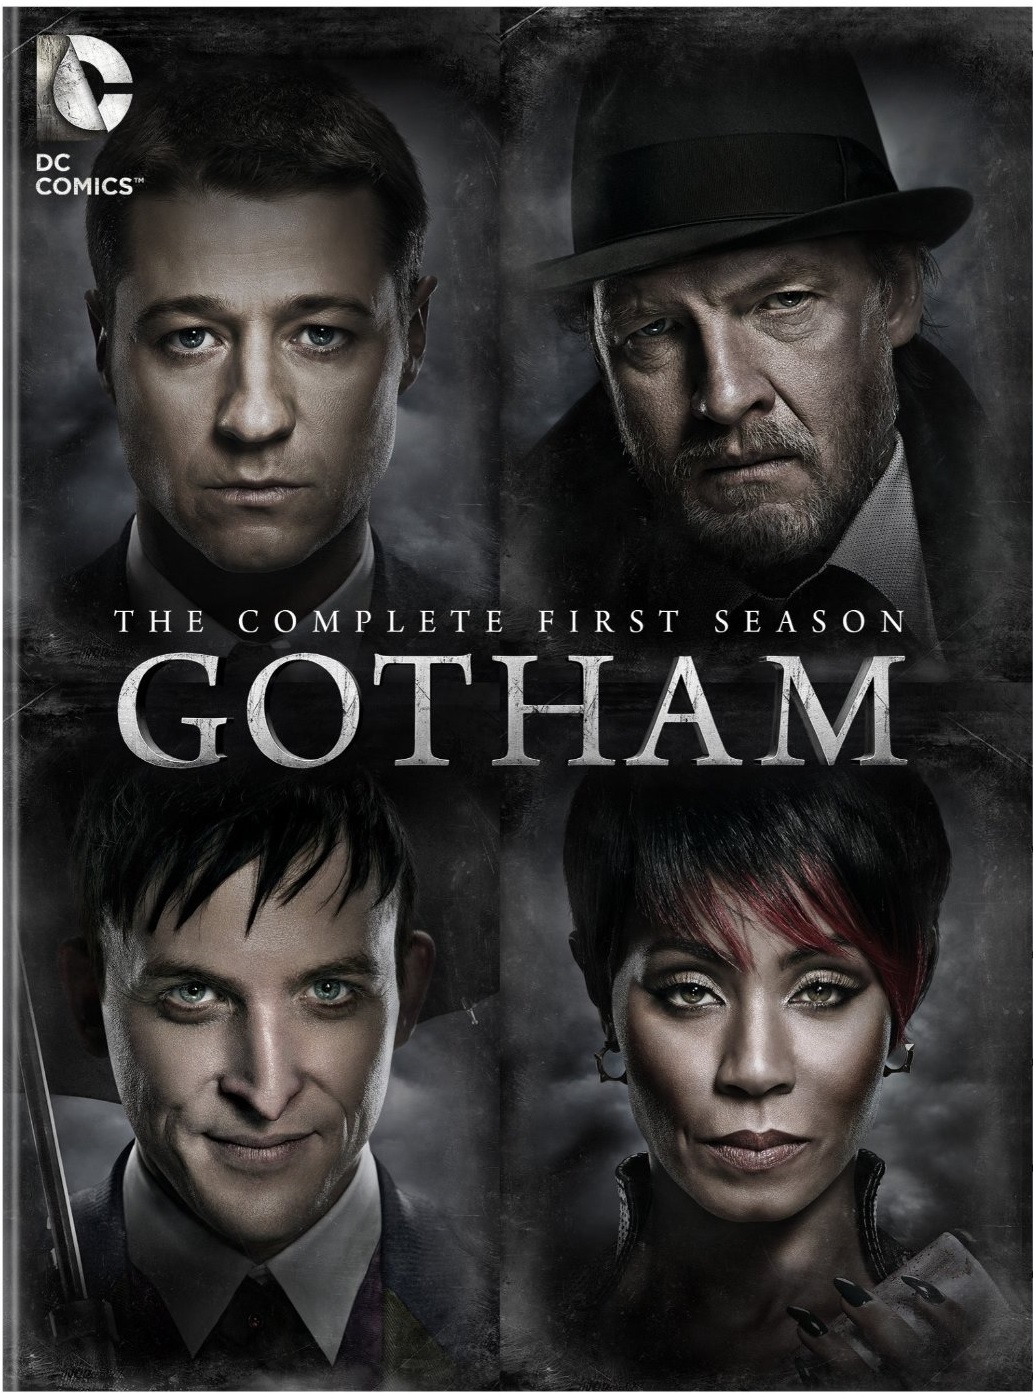 Gotham Season 1 DVD Review